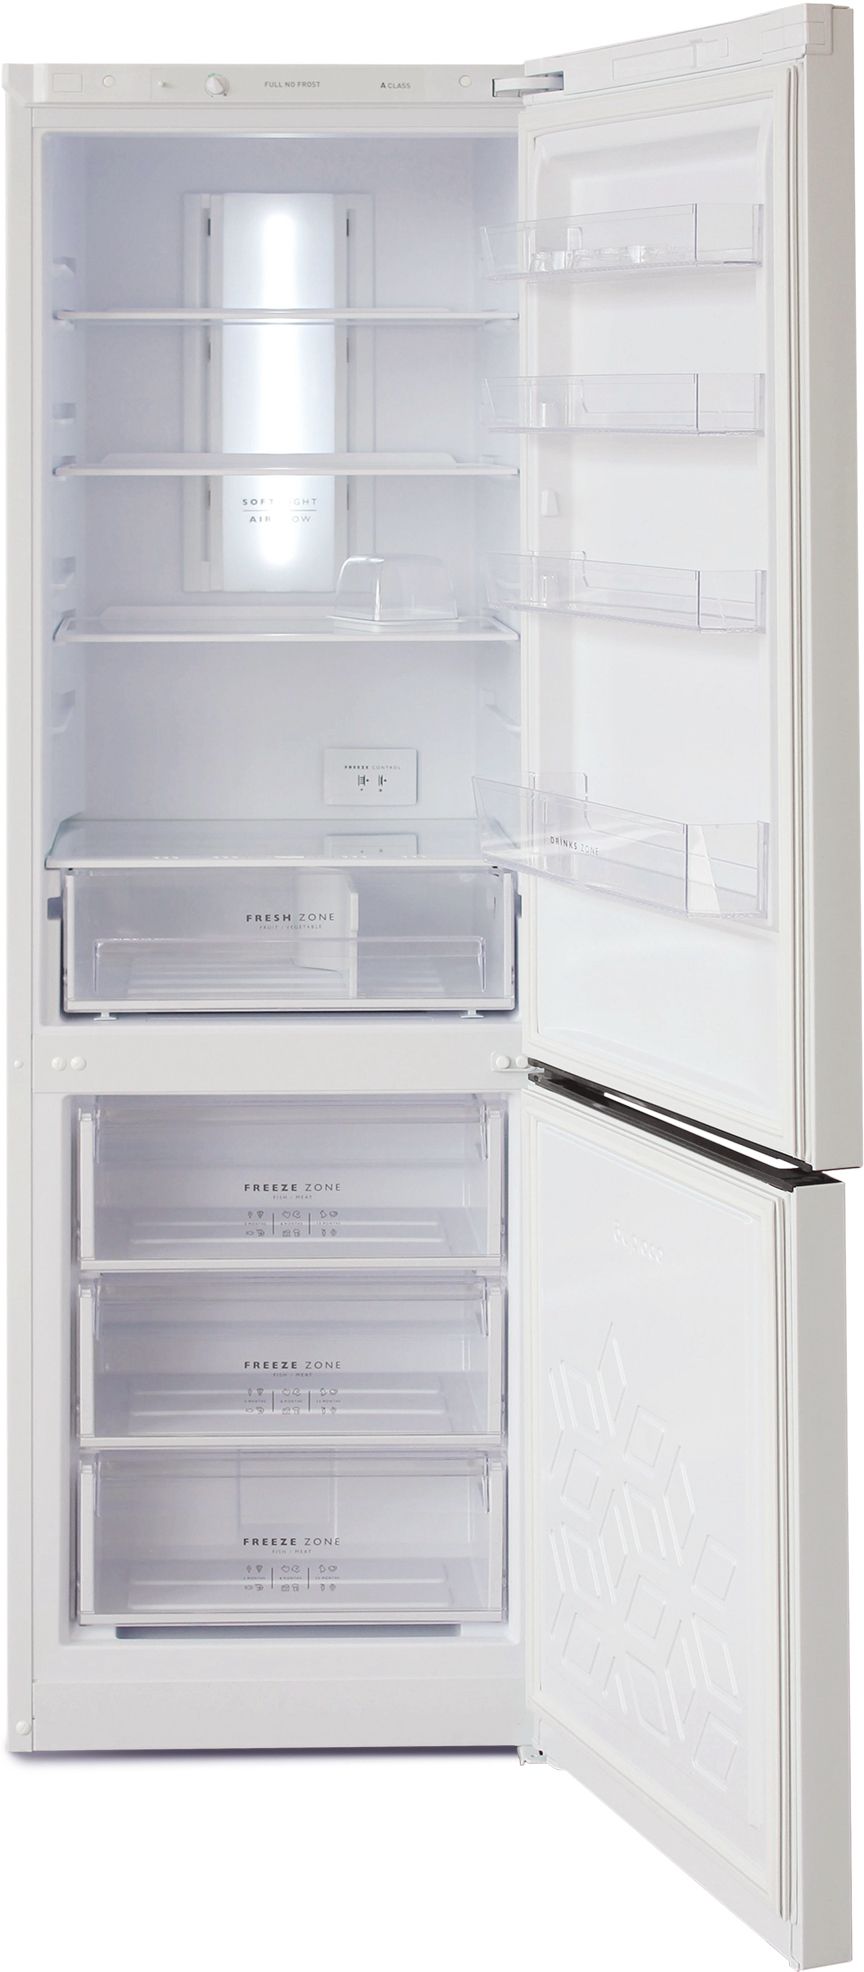 холодильник бирюса 860nf, купить в Красноярске холодильник бирюса 860nf,  купить в Красноярске дешево холодильник бирюса 860nf, купить в Красноярске минимальной цене холодильник бирюса 860nf